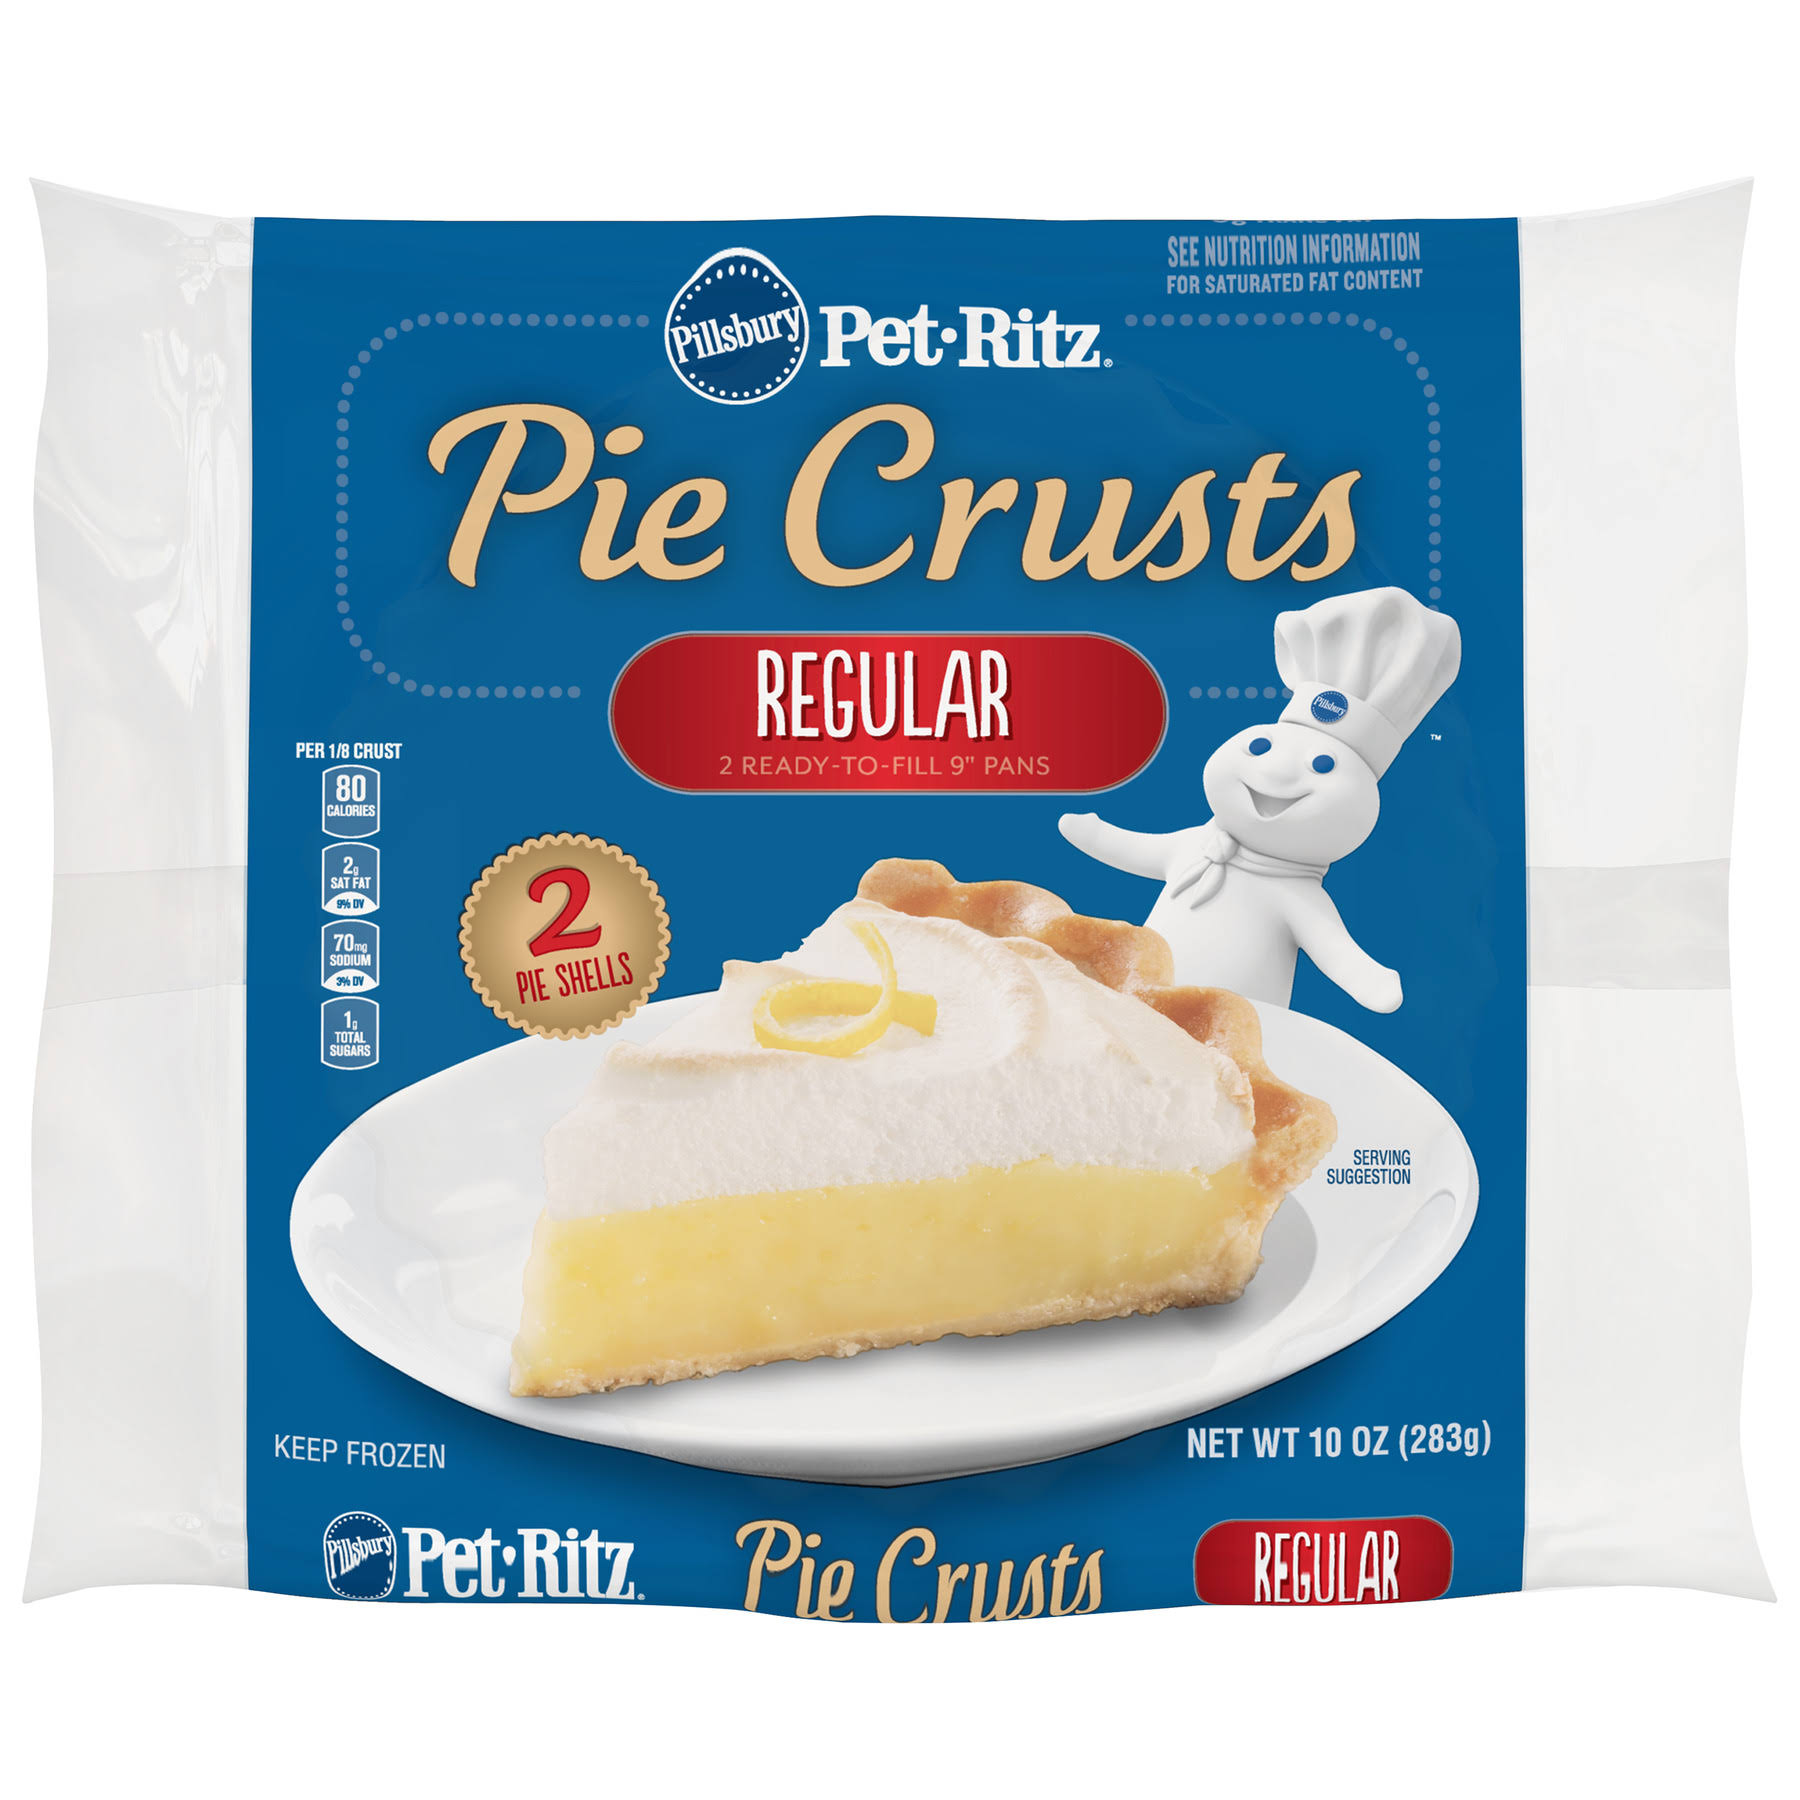 Pillsbury Pet-Ritz Pie Crusts - 2 Regular